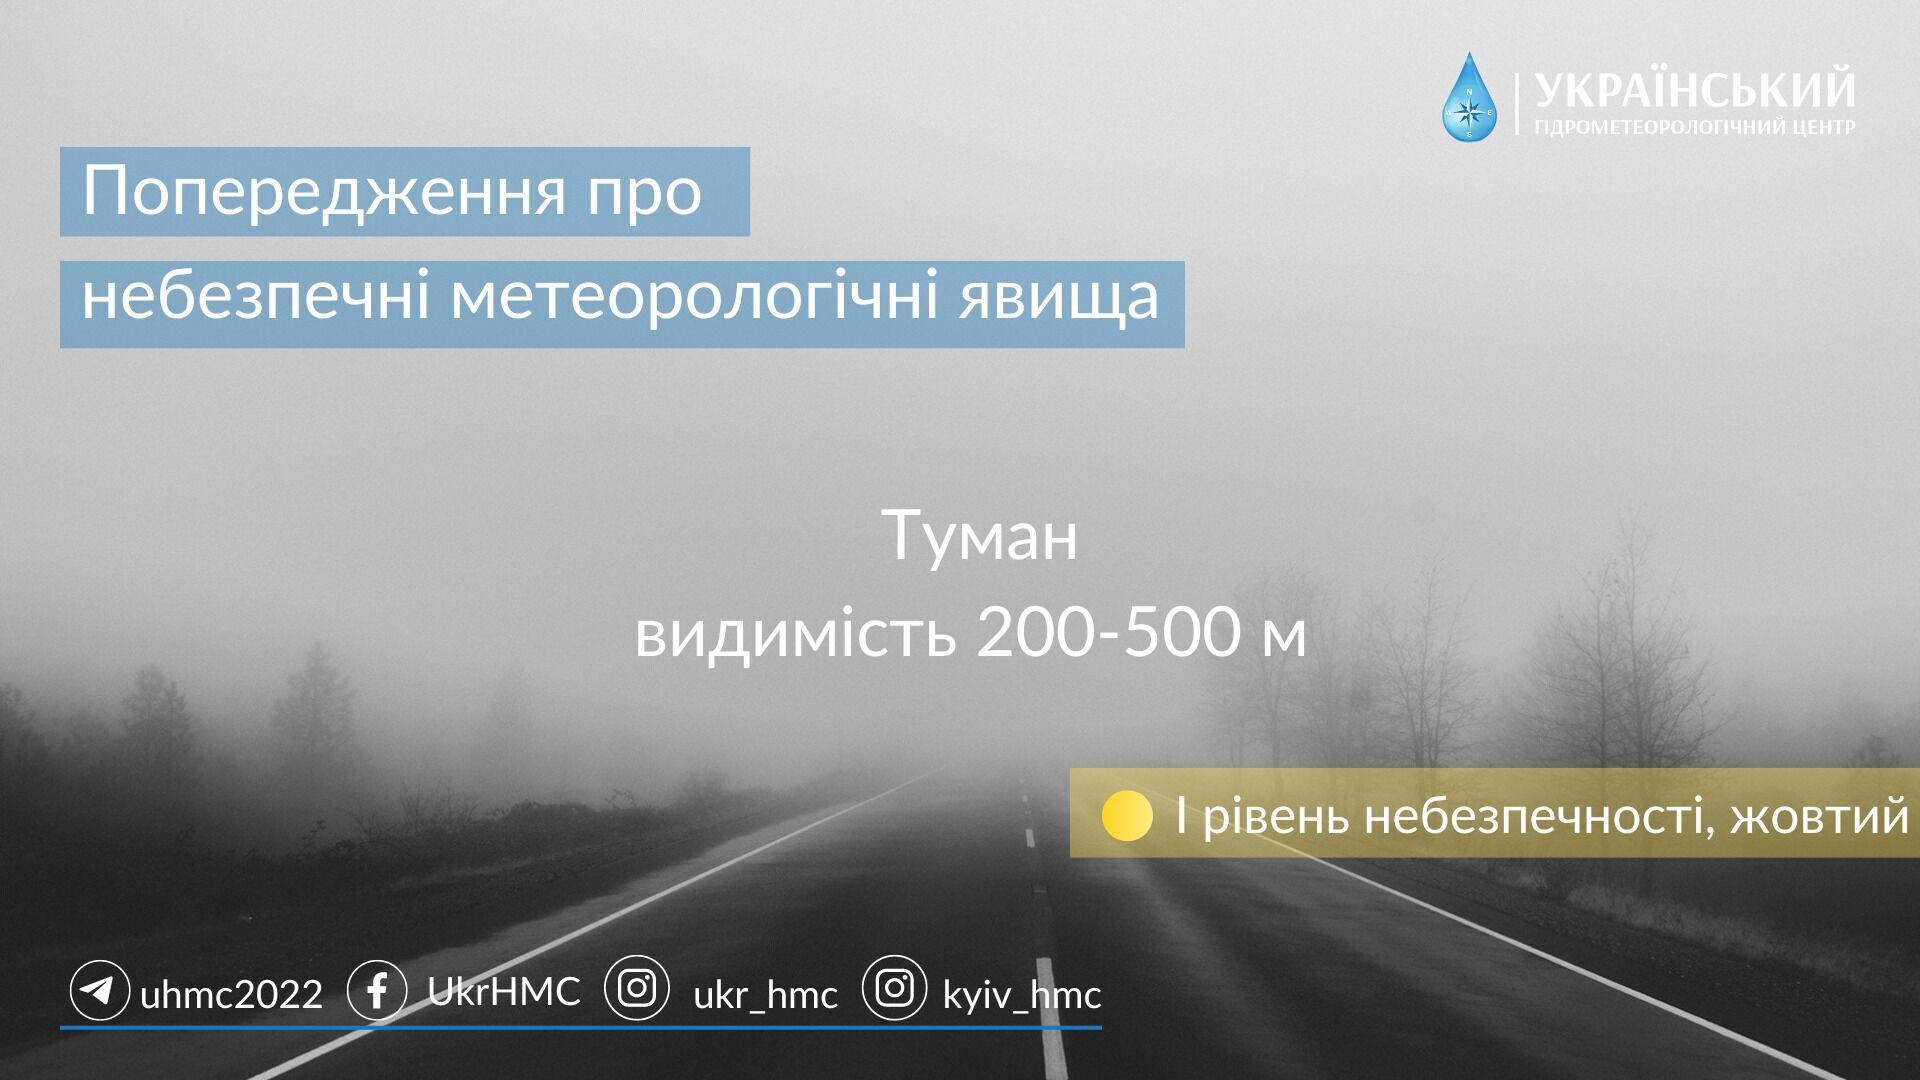 Предупреждение о тумане в Украине на 9 ноября 2022 года